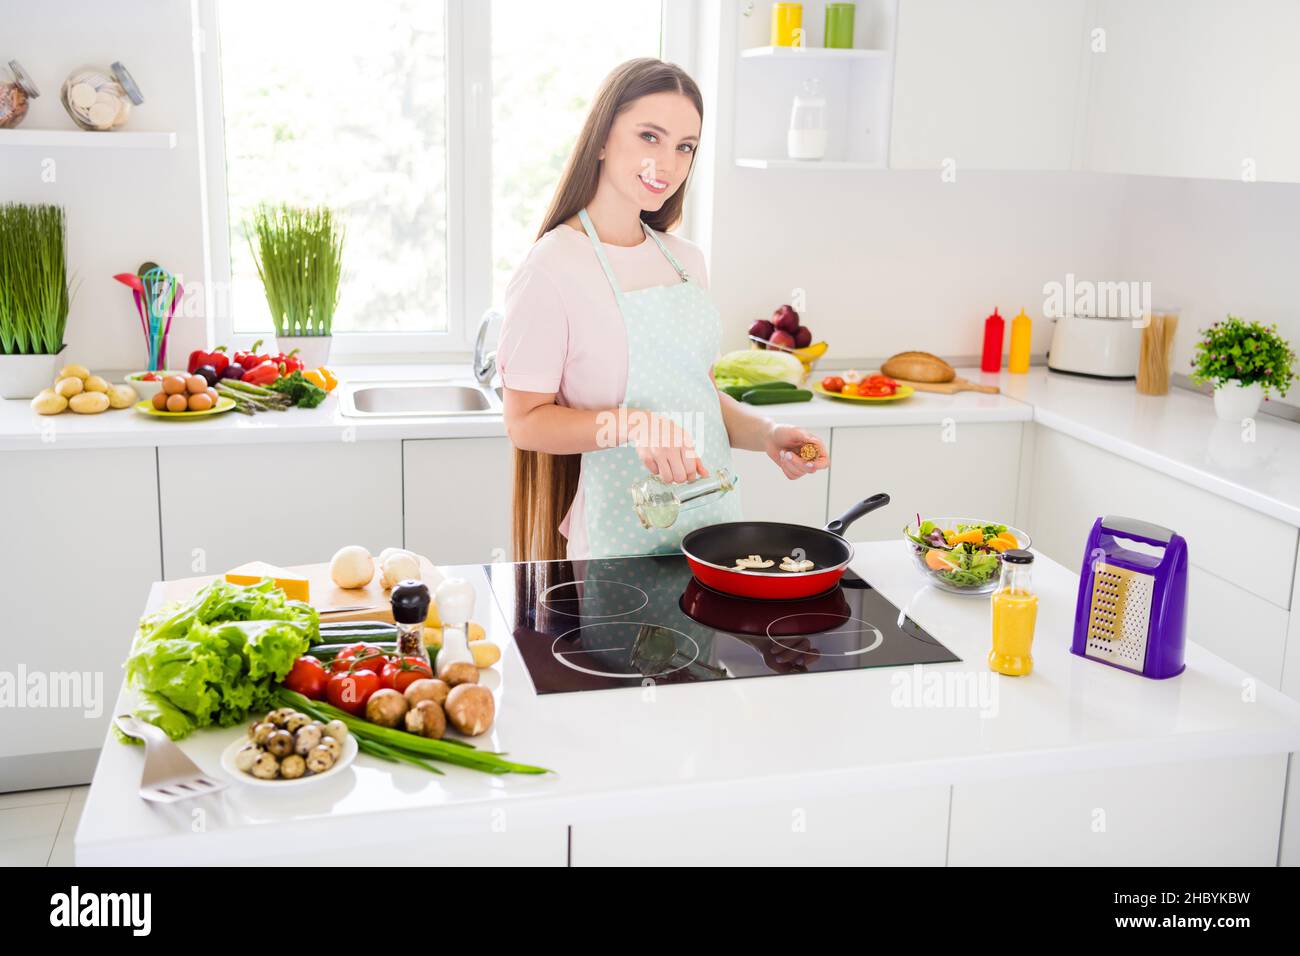 Retrato de una chica atractiva y alegre cocina sabrosa deliciosa comida casera gourment freír la cena en blanco claro cocina en casa interior Foto de stock